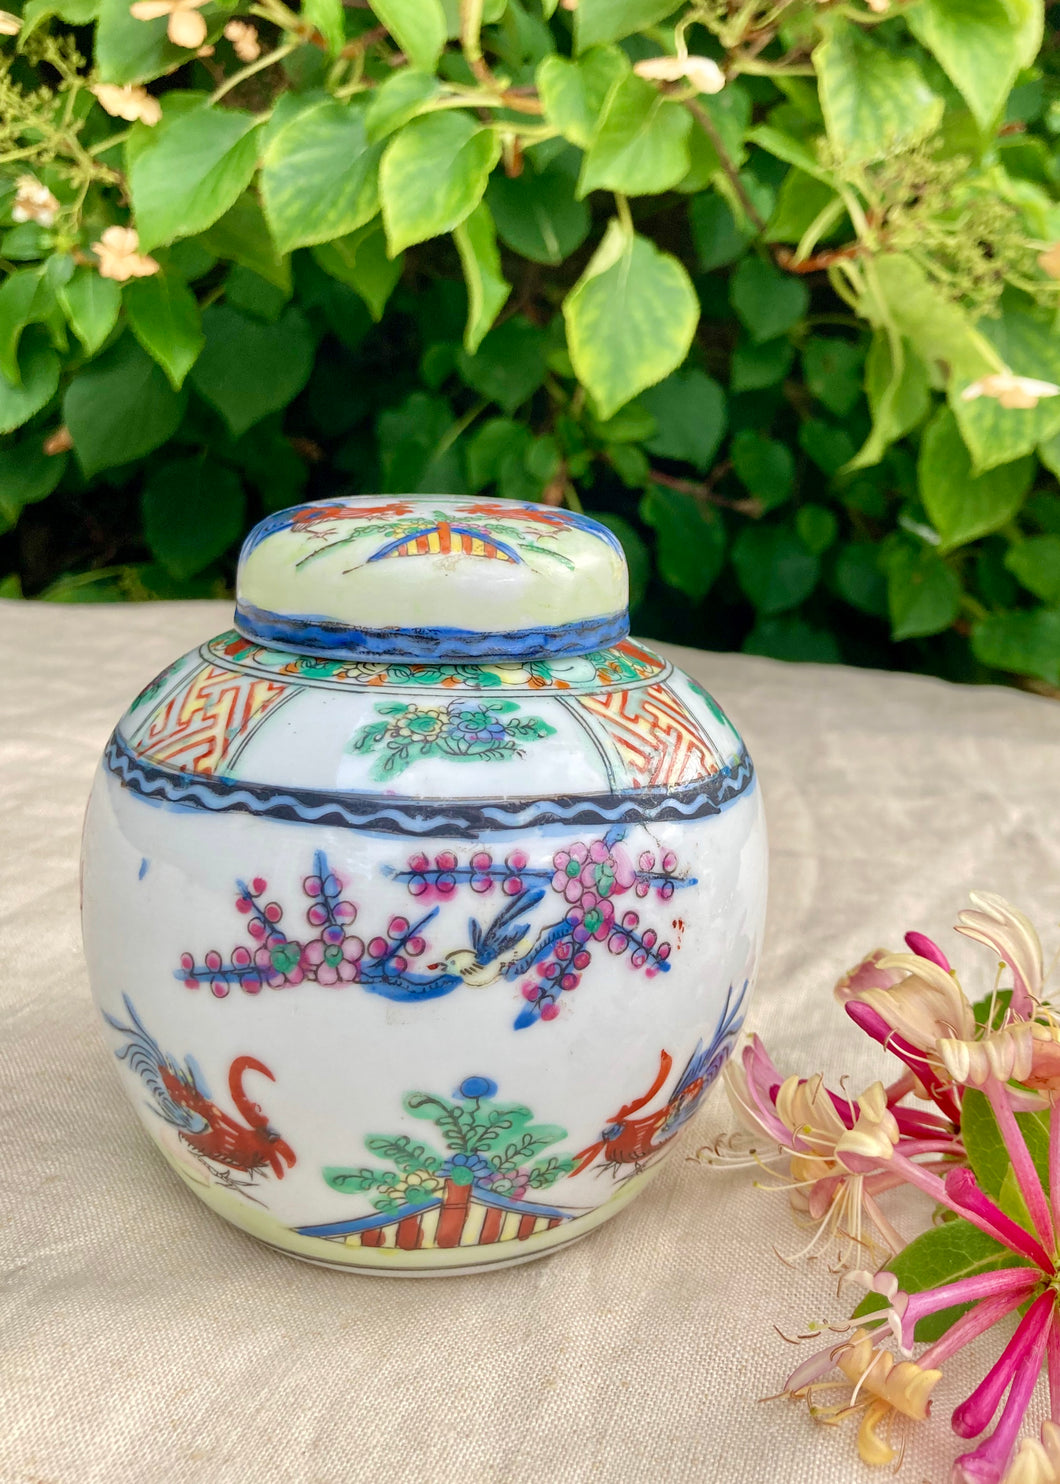 Decorative porcelain ginger jar